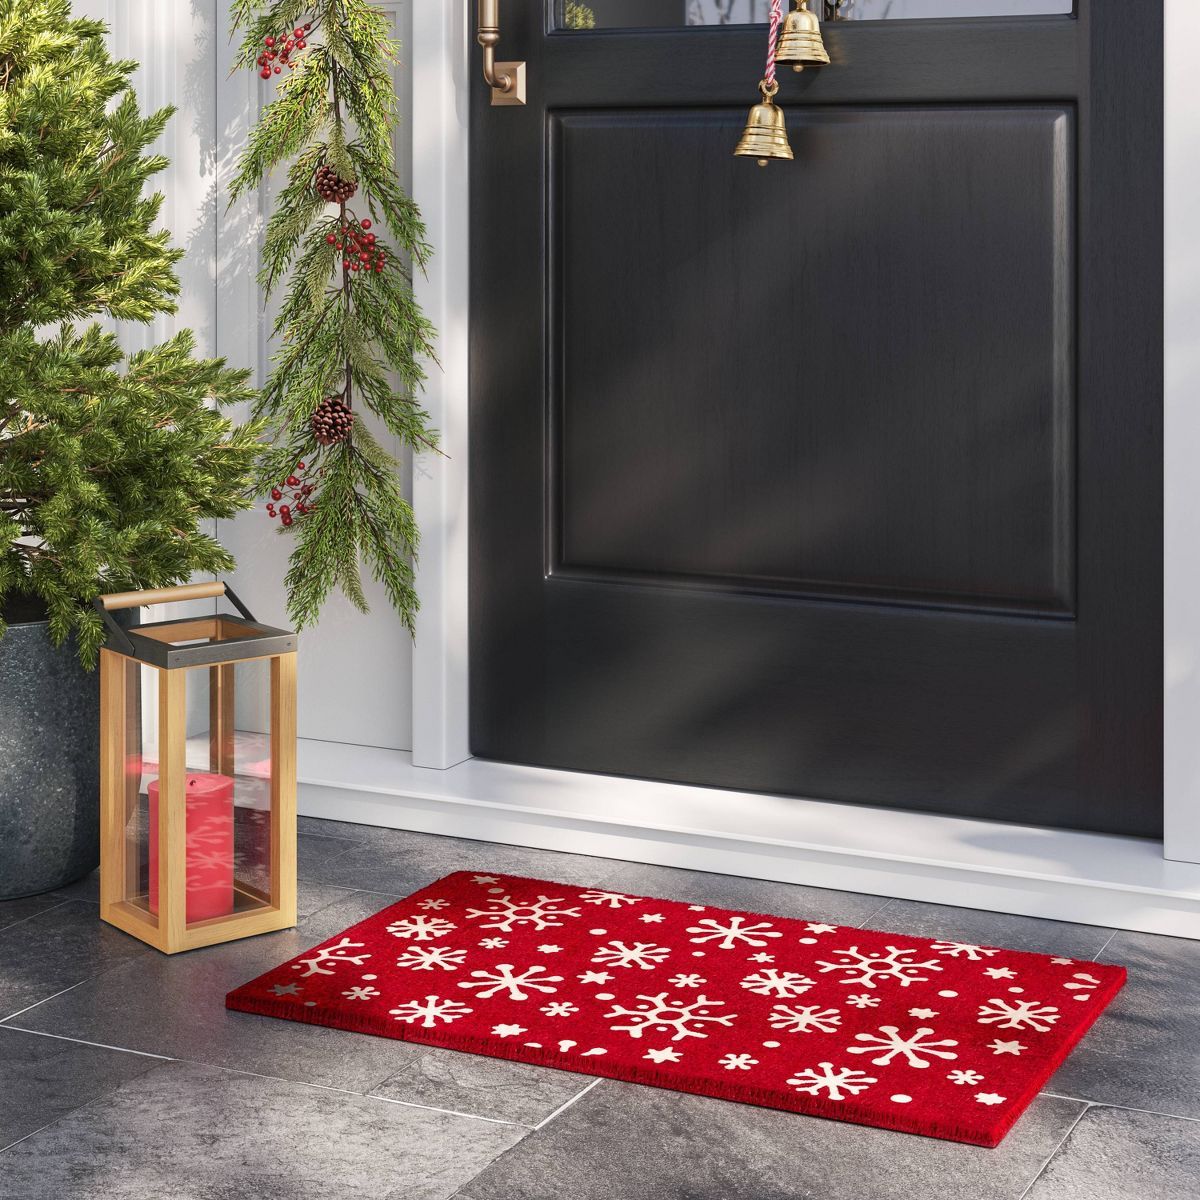 1'6"x2'6" Snowflake Coir Christmas Doormat Red - Wondershop™ | Target